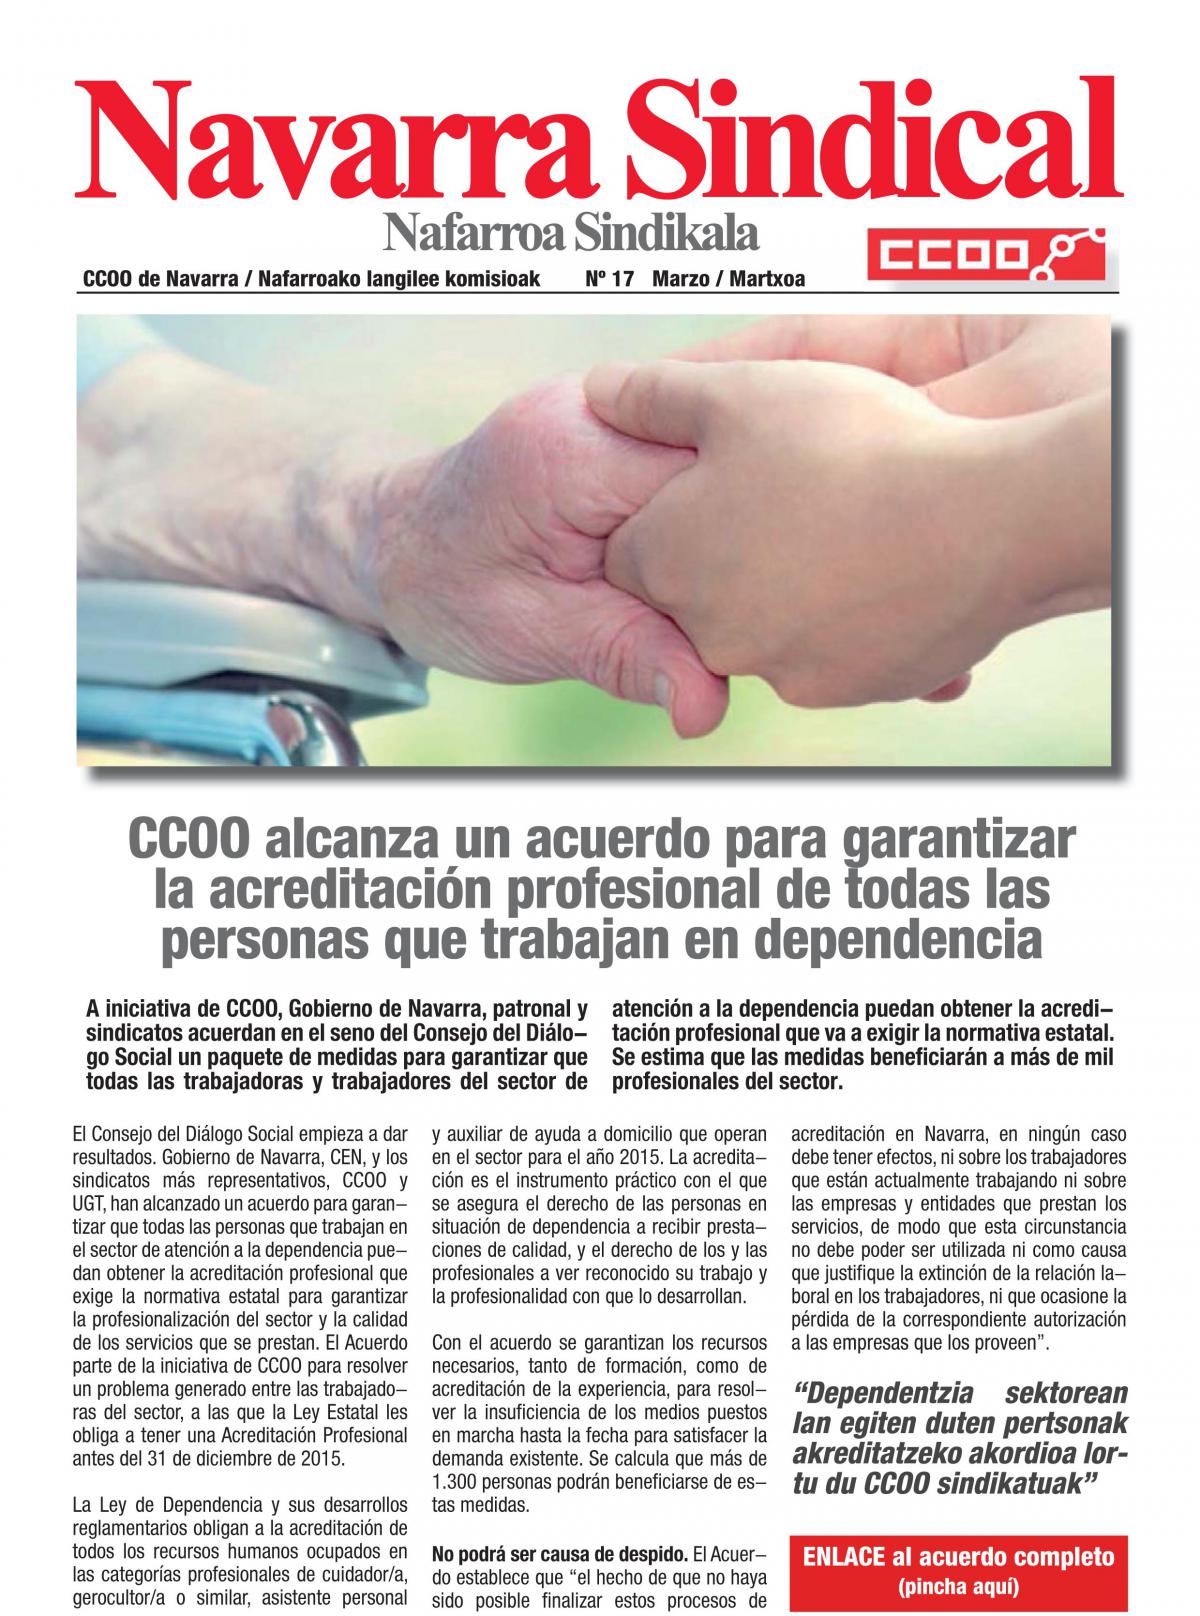 CCOO alcanza un acuerdo para garantizar la acreditación profesional de todas las personas que trabajan en dependencia